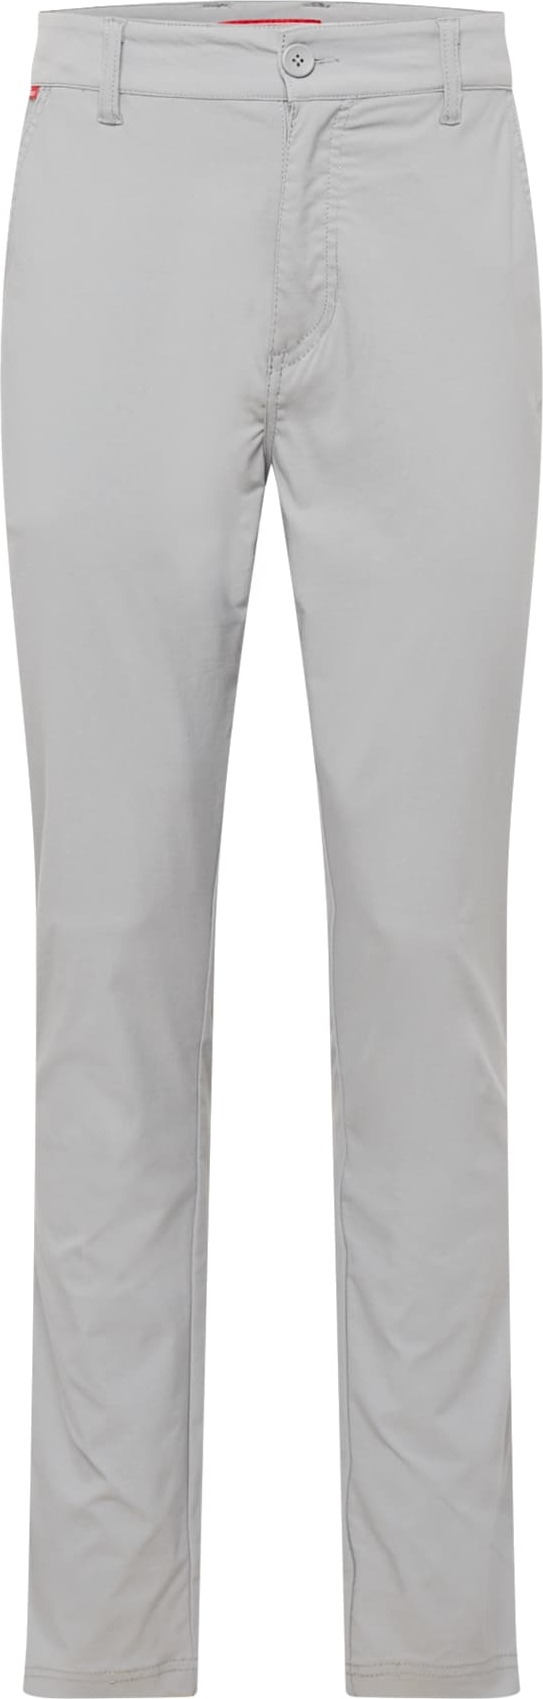 CRAGHOPPERS Outdoorové kalhoty 'Santos' šedá